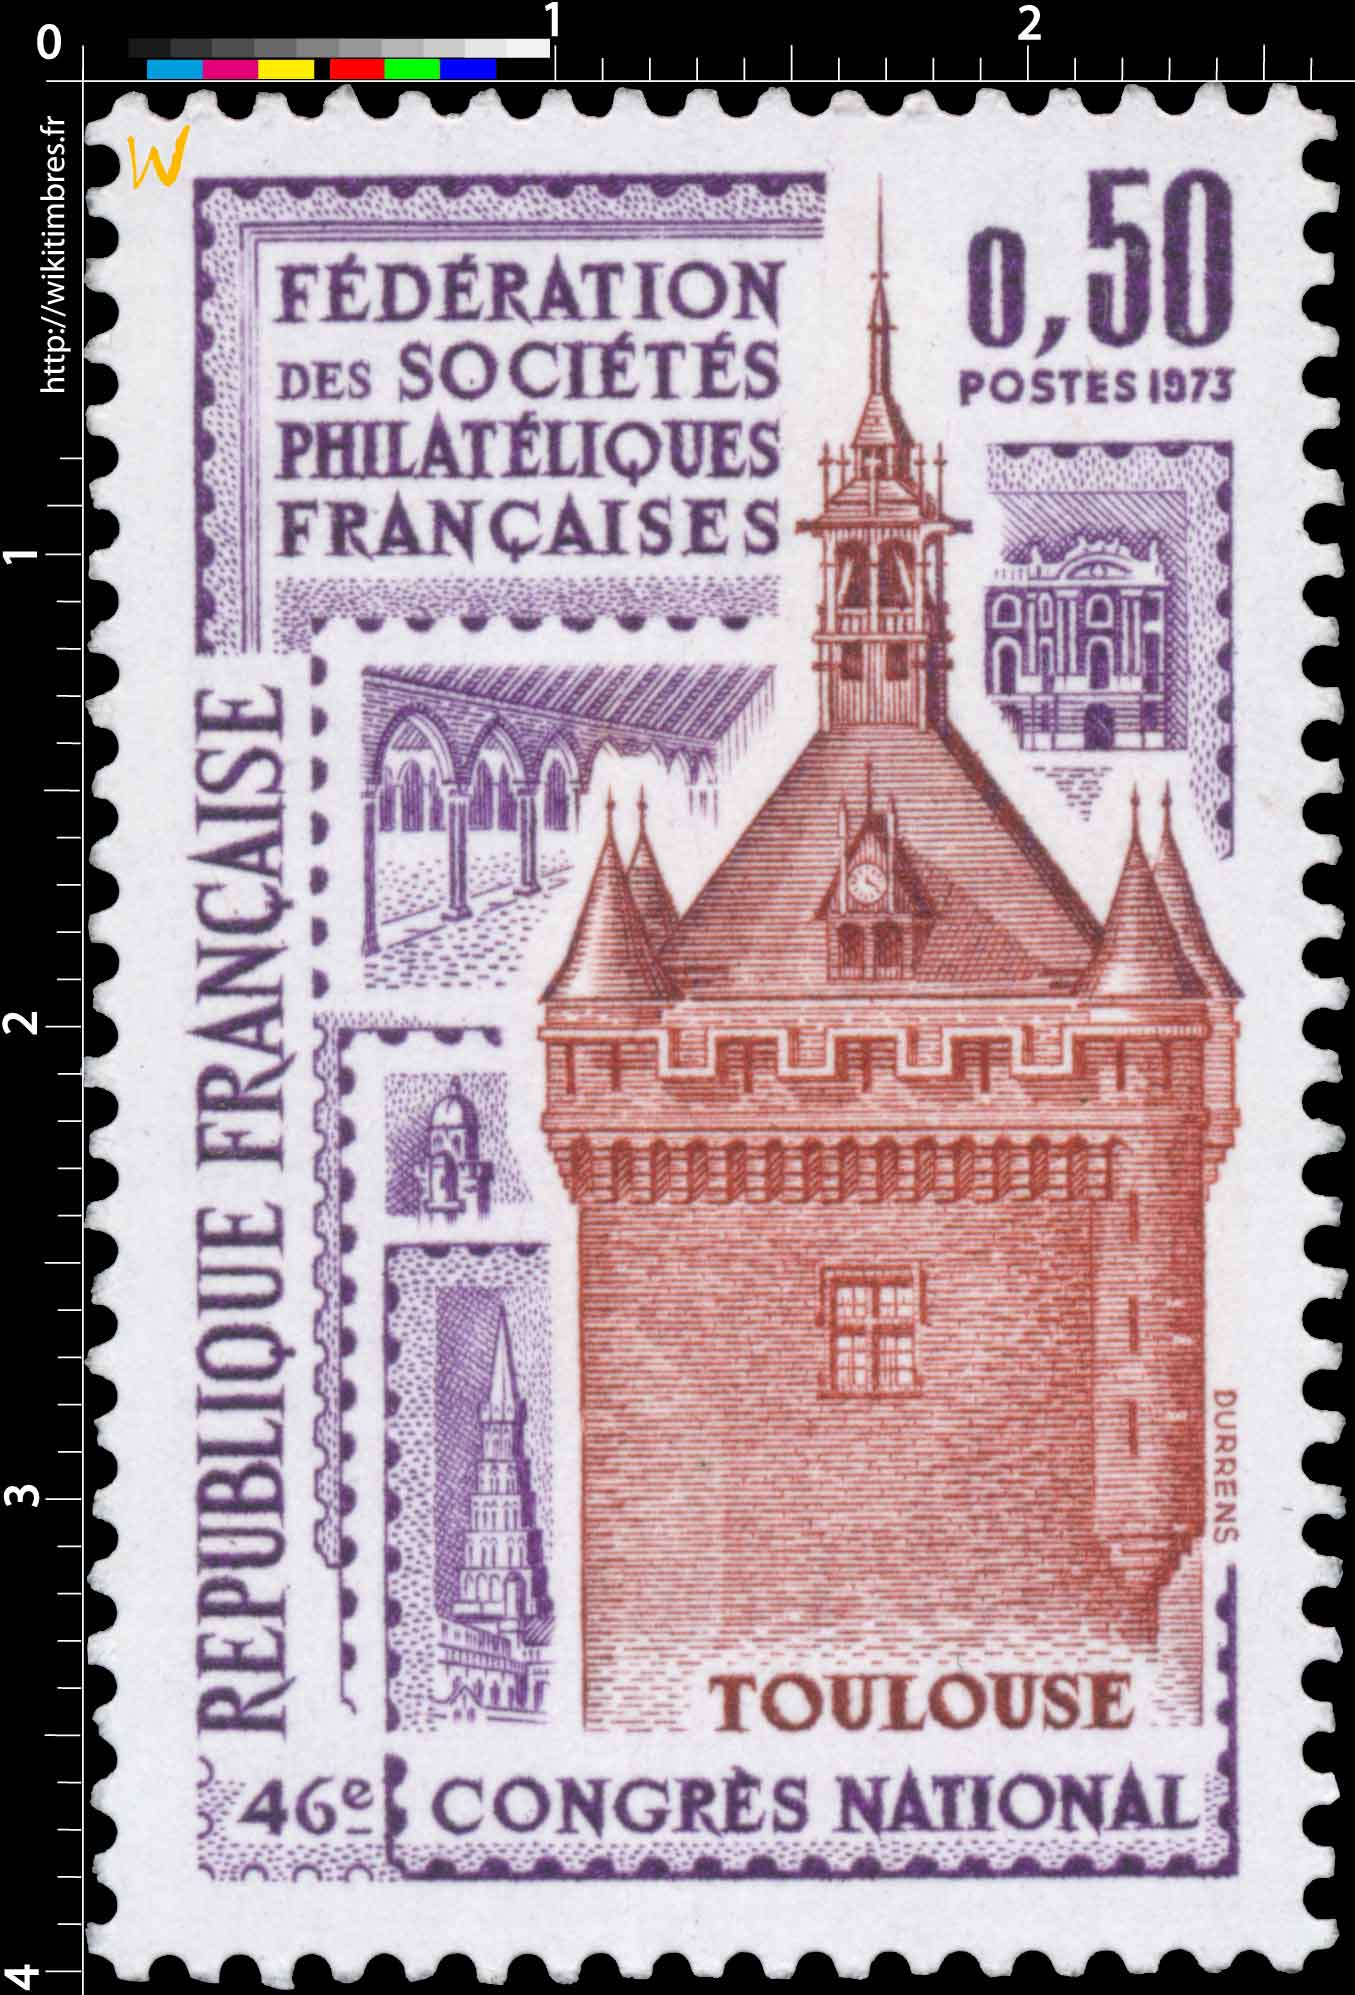 1973 46e CONGRÈS NATIONAL FÉDÉRATION DES SOCIÉTÉS PHILATÉLIQUES FRANÇAISES